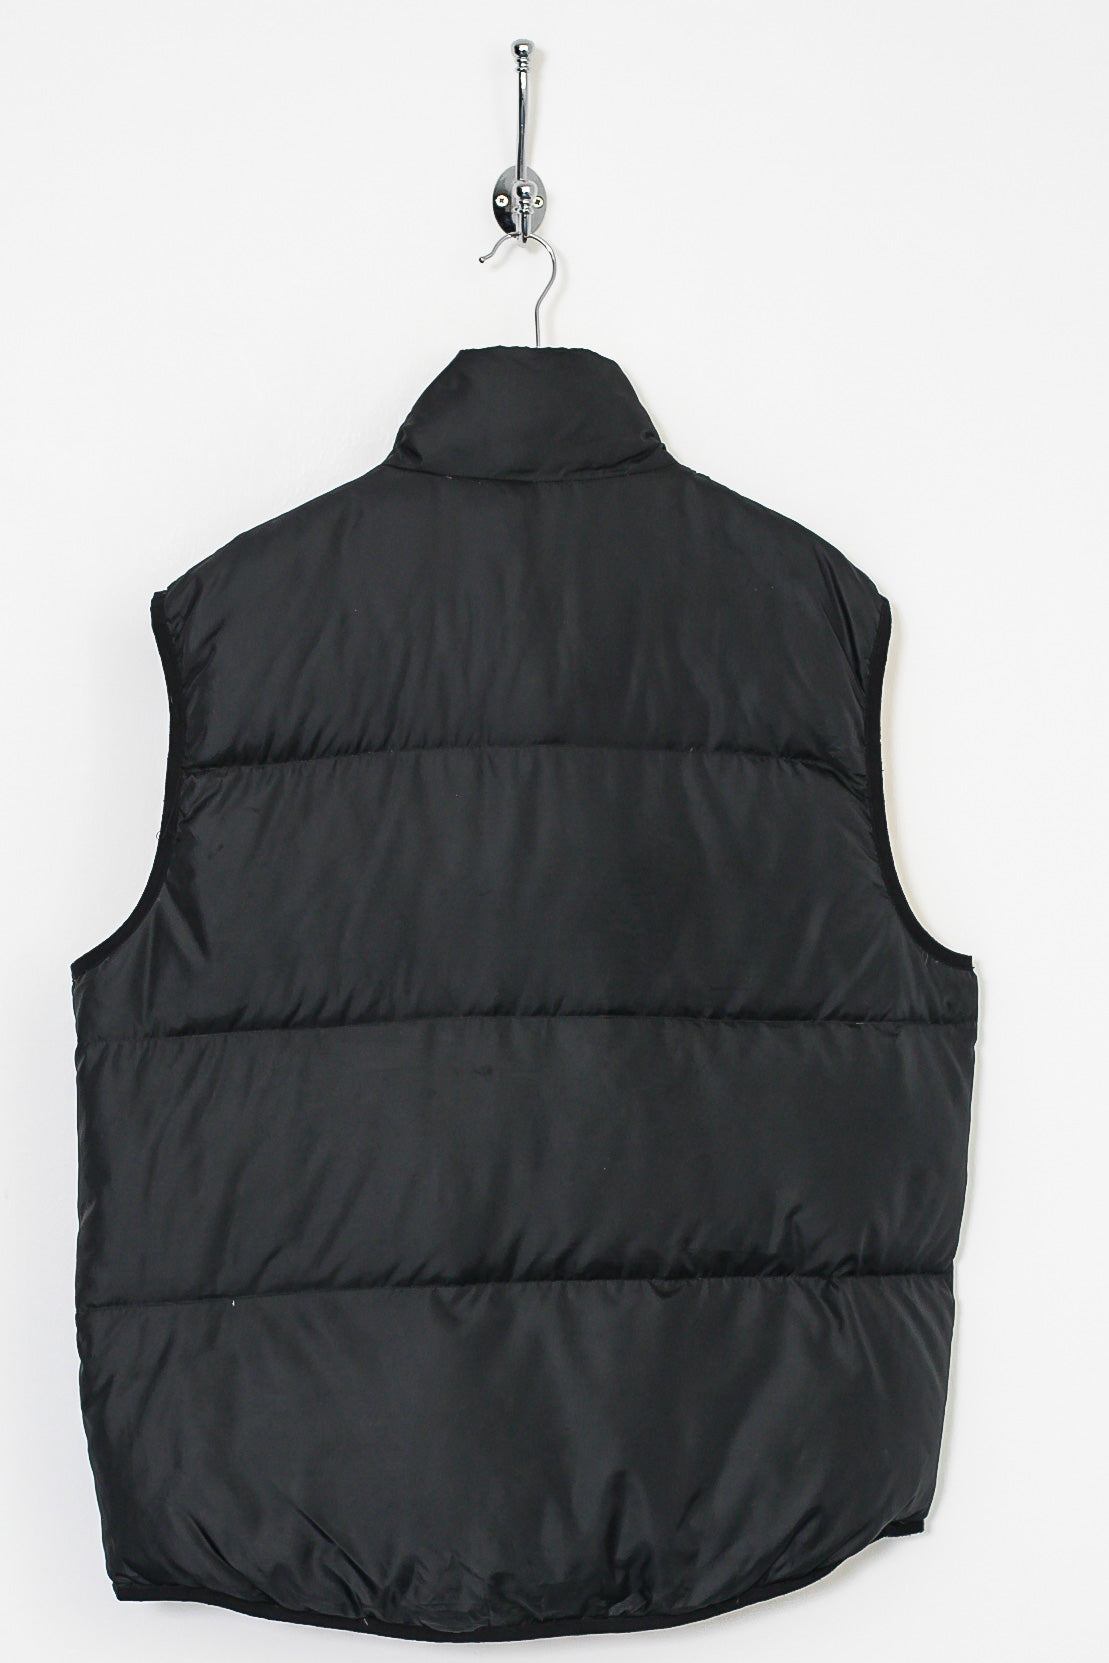 00s Ralph Lauren Down Filled Gilet Puffer Jacket (M)